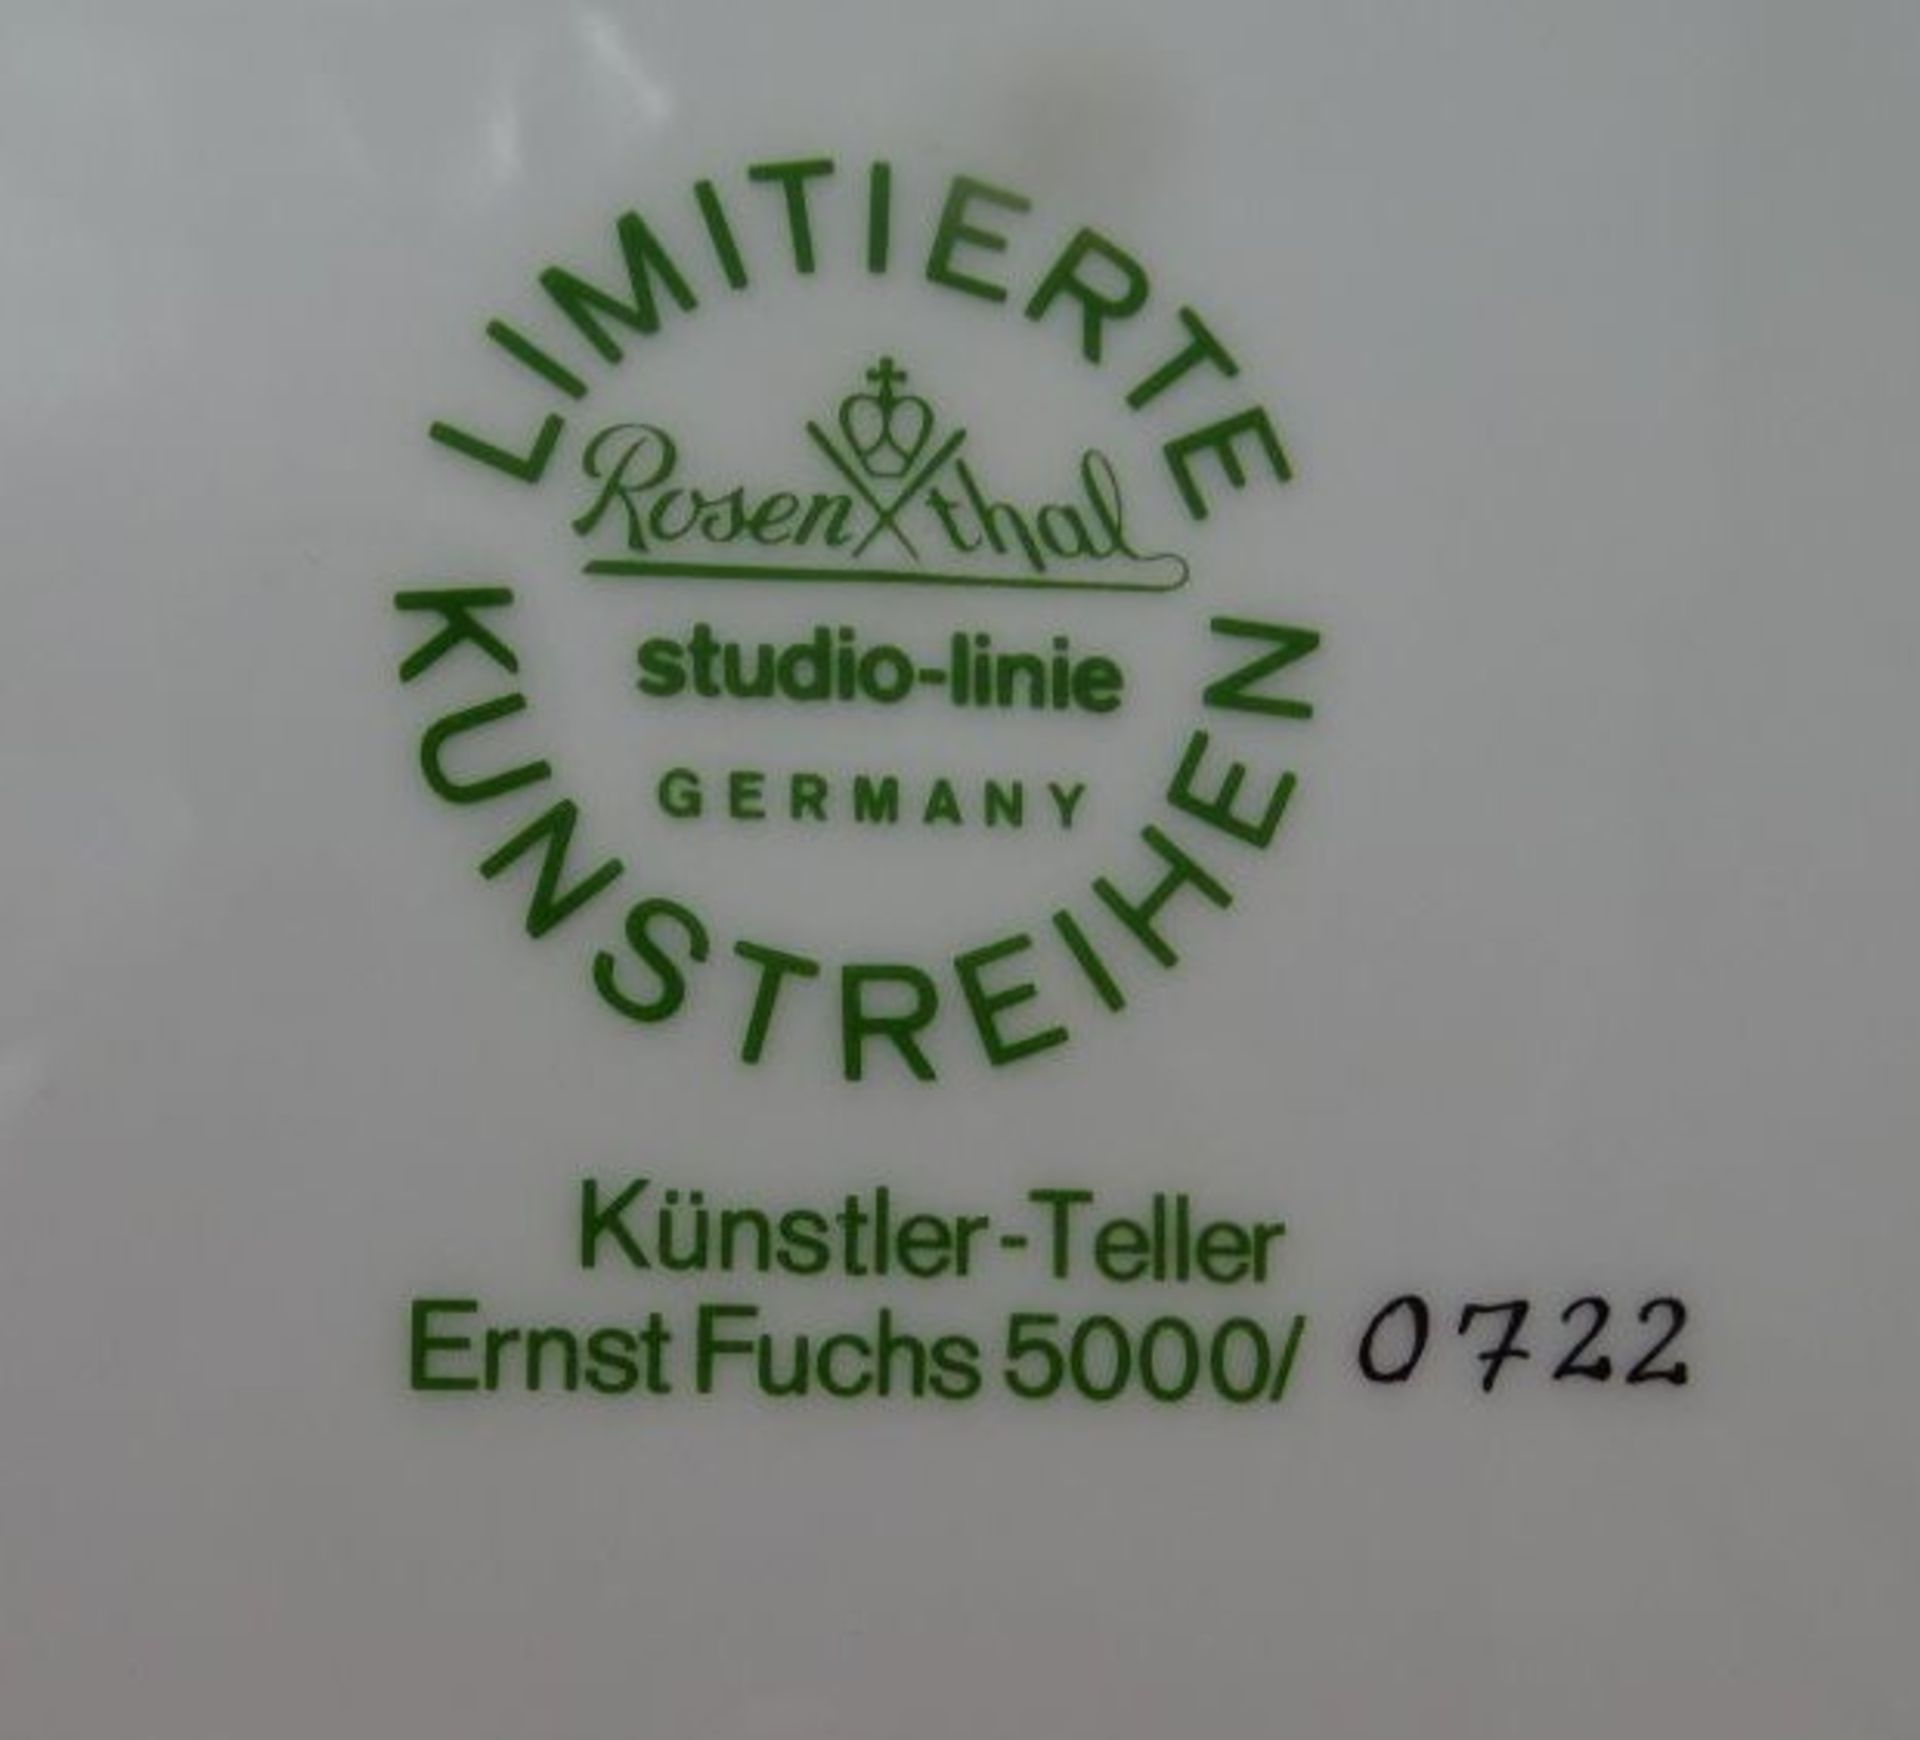 Rosenthal Künstlerteller Nr.17 in OVP, Ernst Fuchs, D-26 cm, limitiert - Bild 4 aus 4